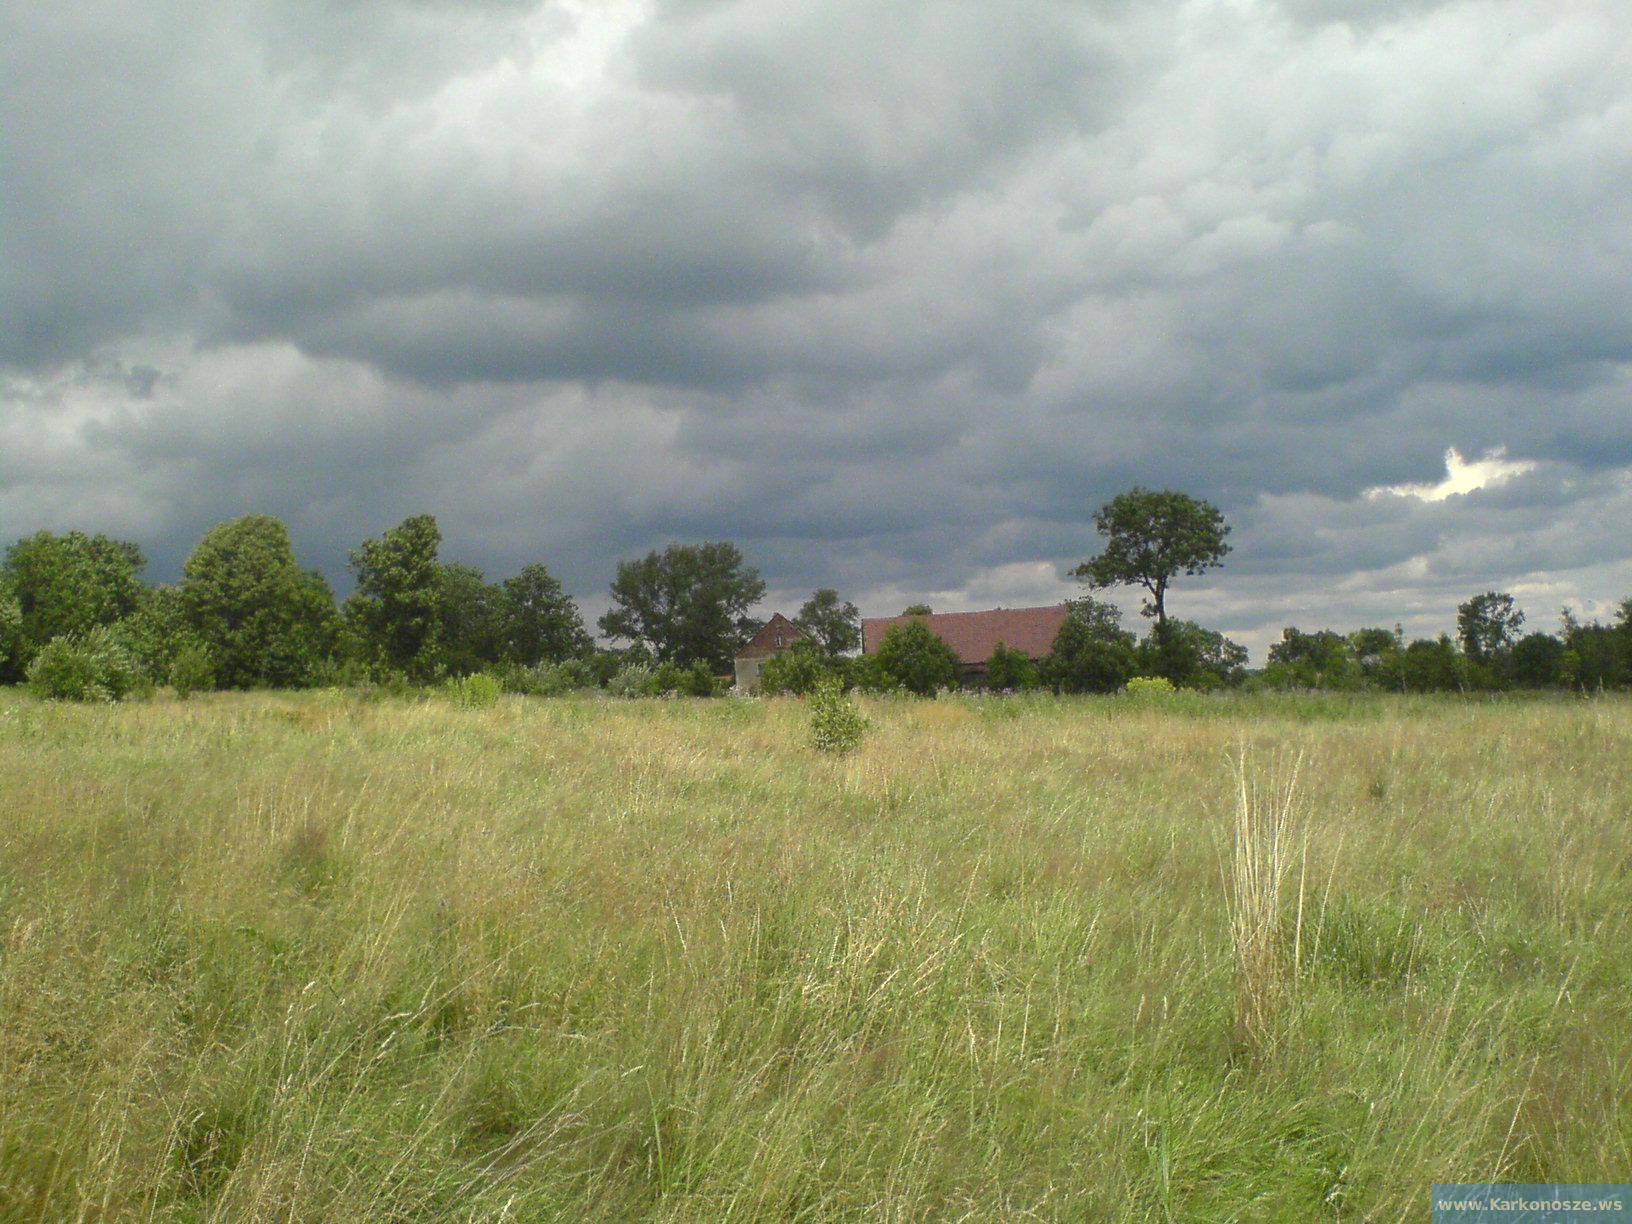 Grudza-chmury nad wioską